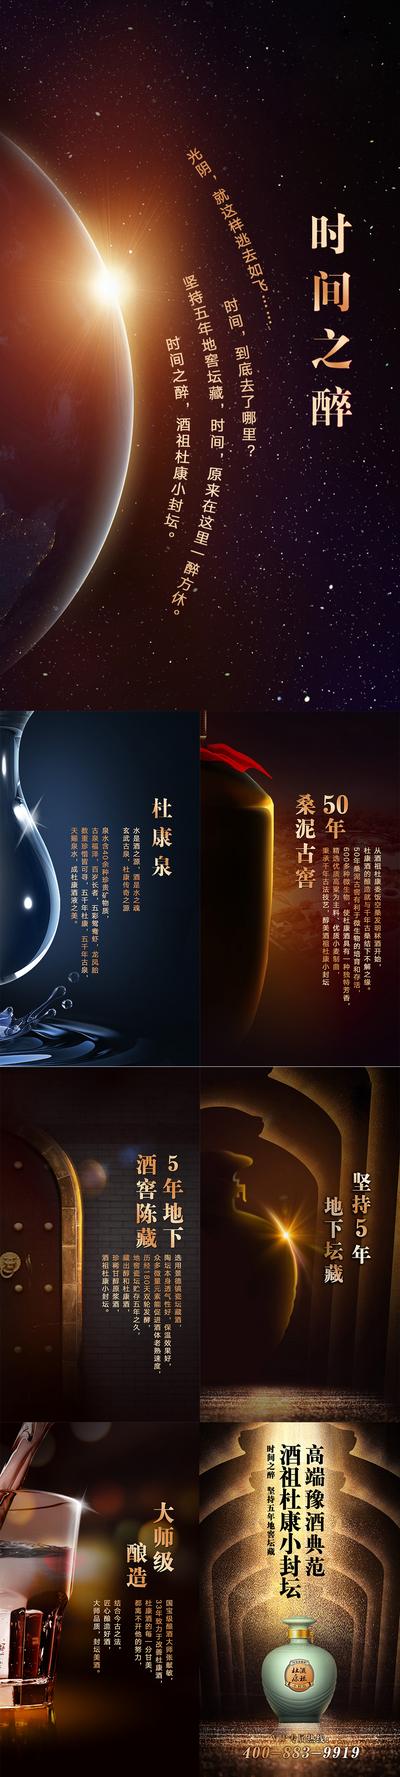 南门网 专题设计 H5 白酒 促销 宣传 高端 大气 绚丽 宇宙 星空